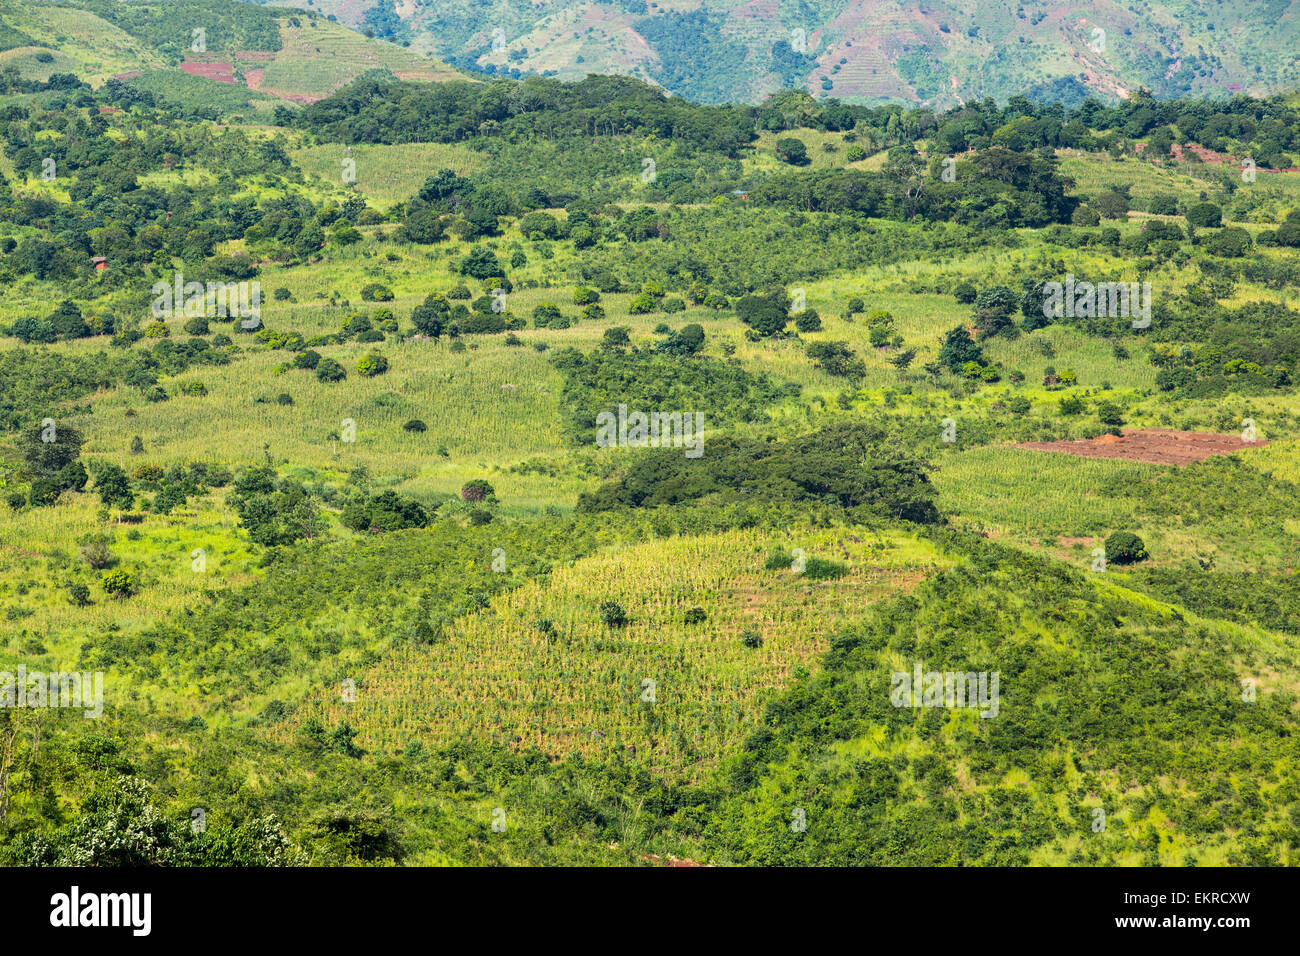 La déforestation sur terre pour cultiver le maïs dans la partie inférieure de la vallée du Shire au Malawi, un pays qui a été fortement déboisées pour les terres agricoles, et à faire du charbon pour la cuisson. Banque D'Images